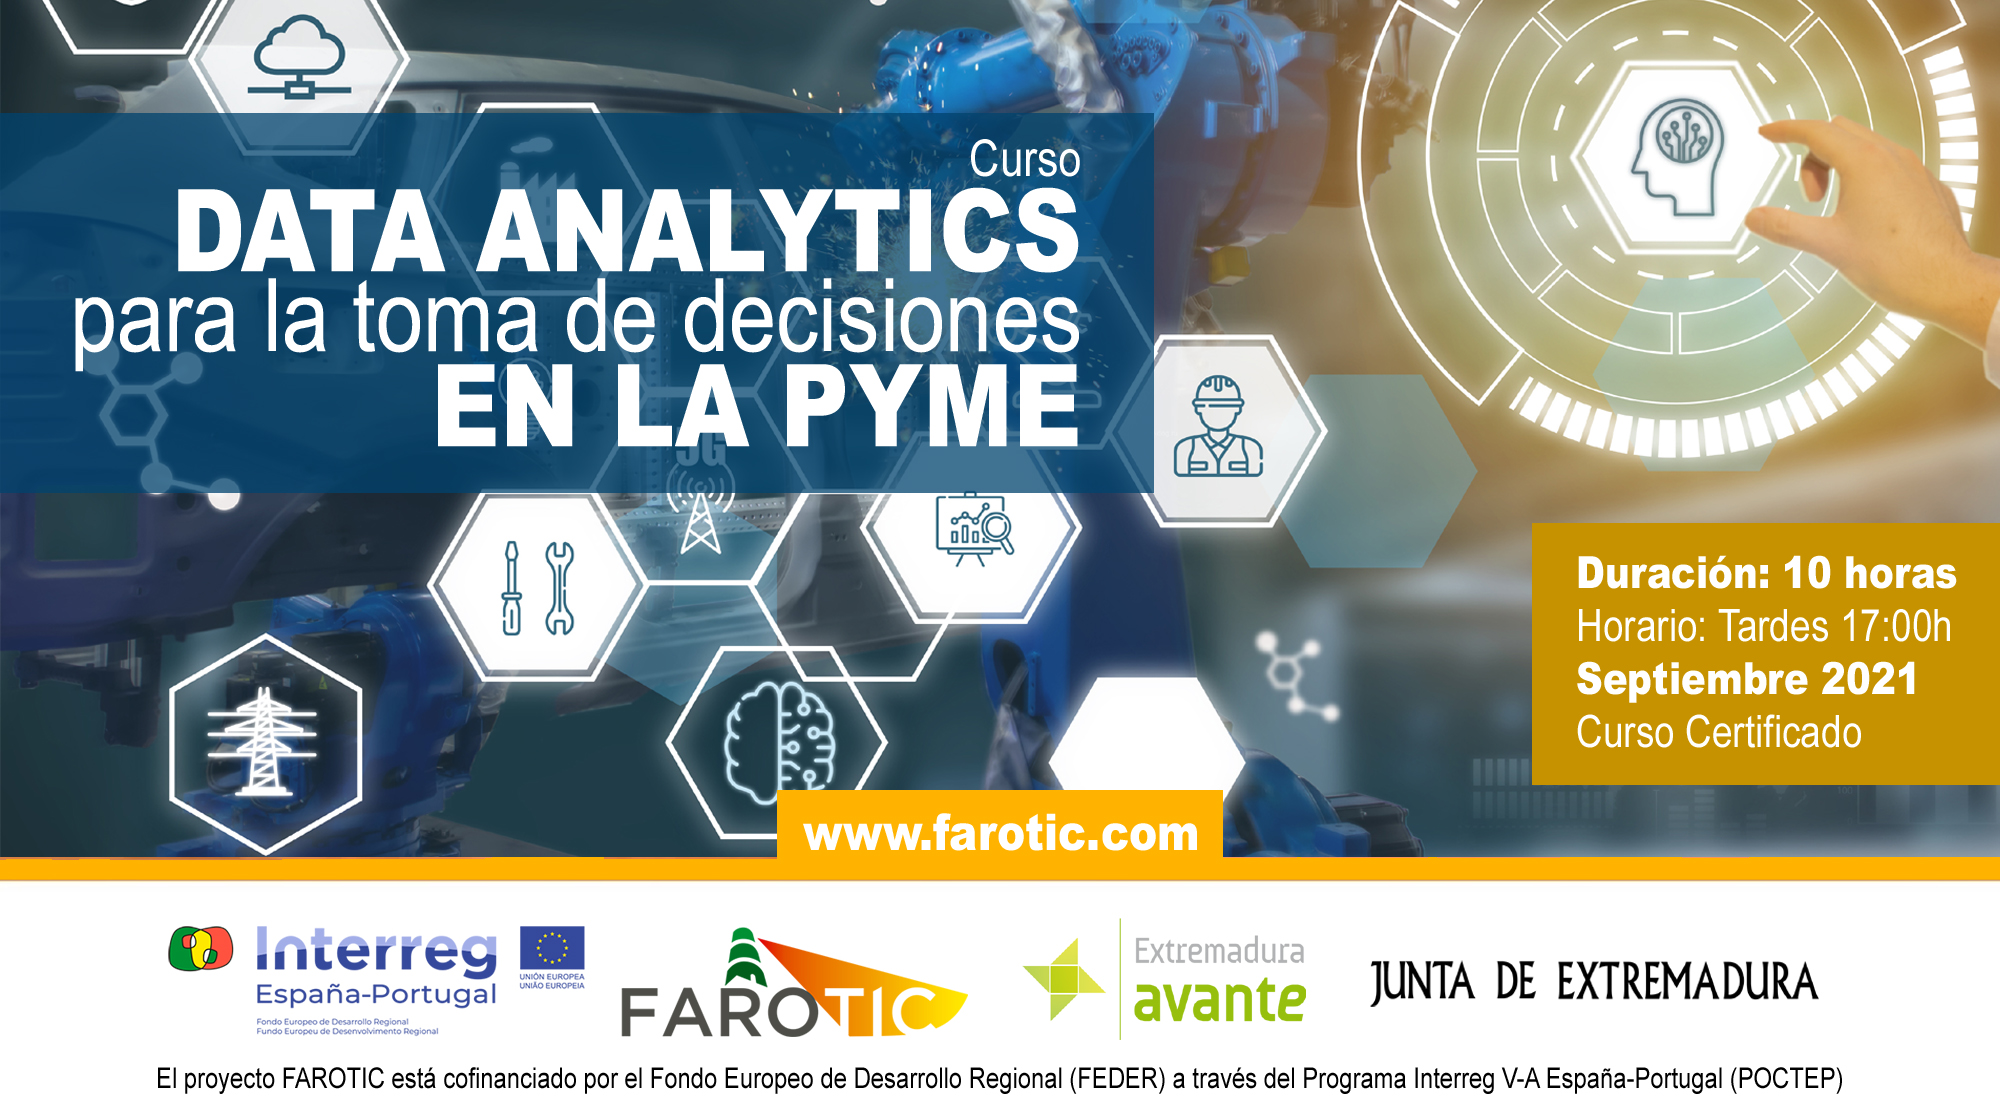 Curso "Data Analytics para la toma de decisiones en la PYME". Proyecto FAROTIC.